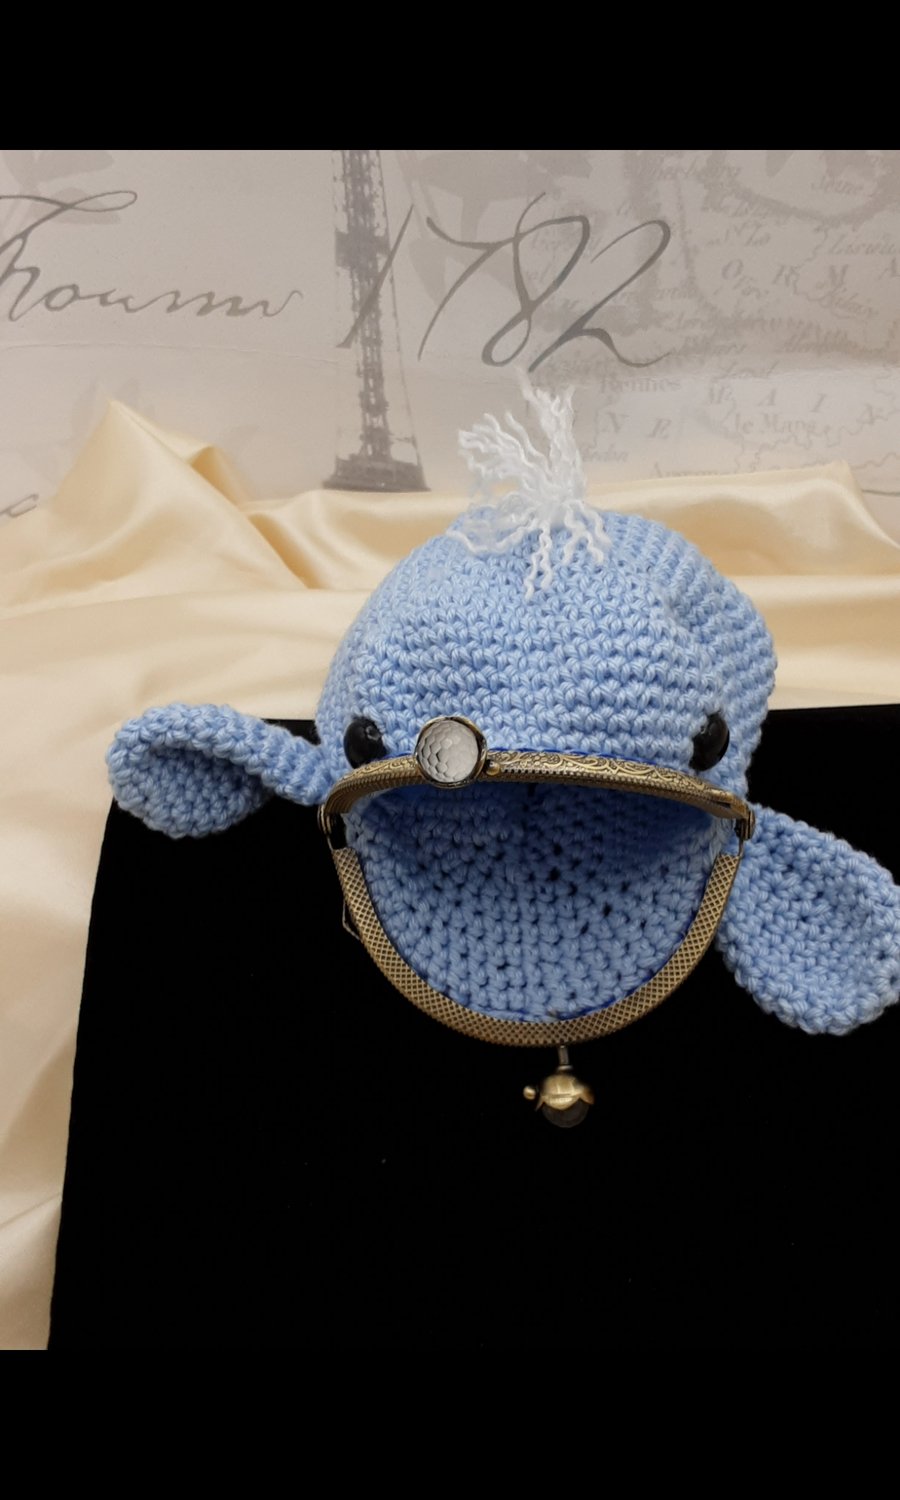 Cute crocheted whale purse